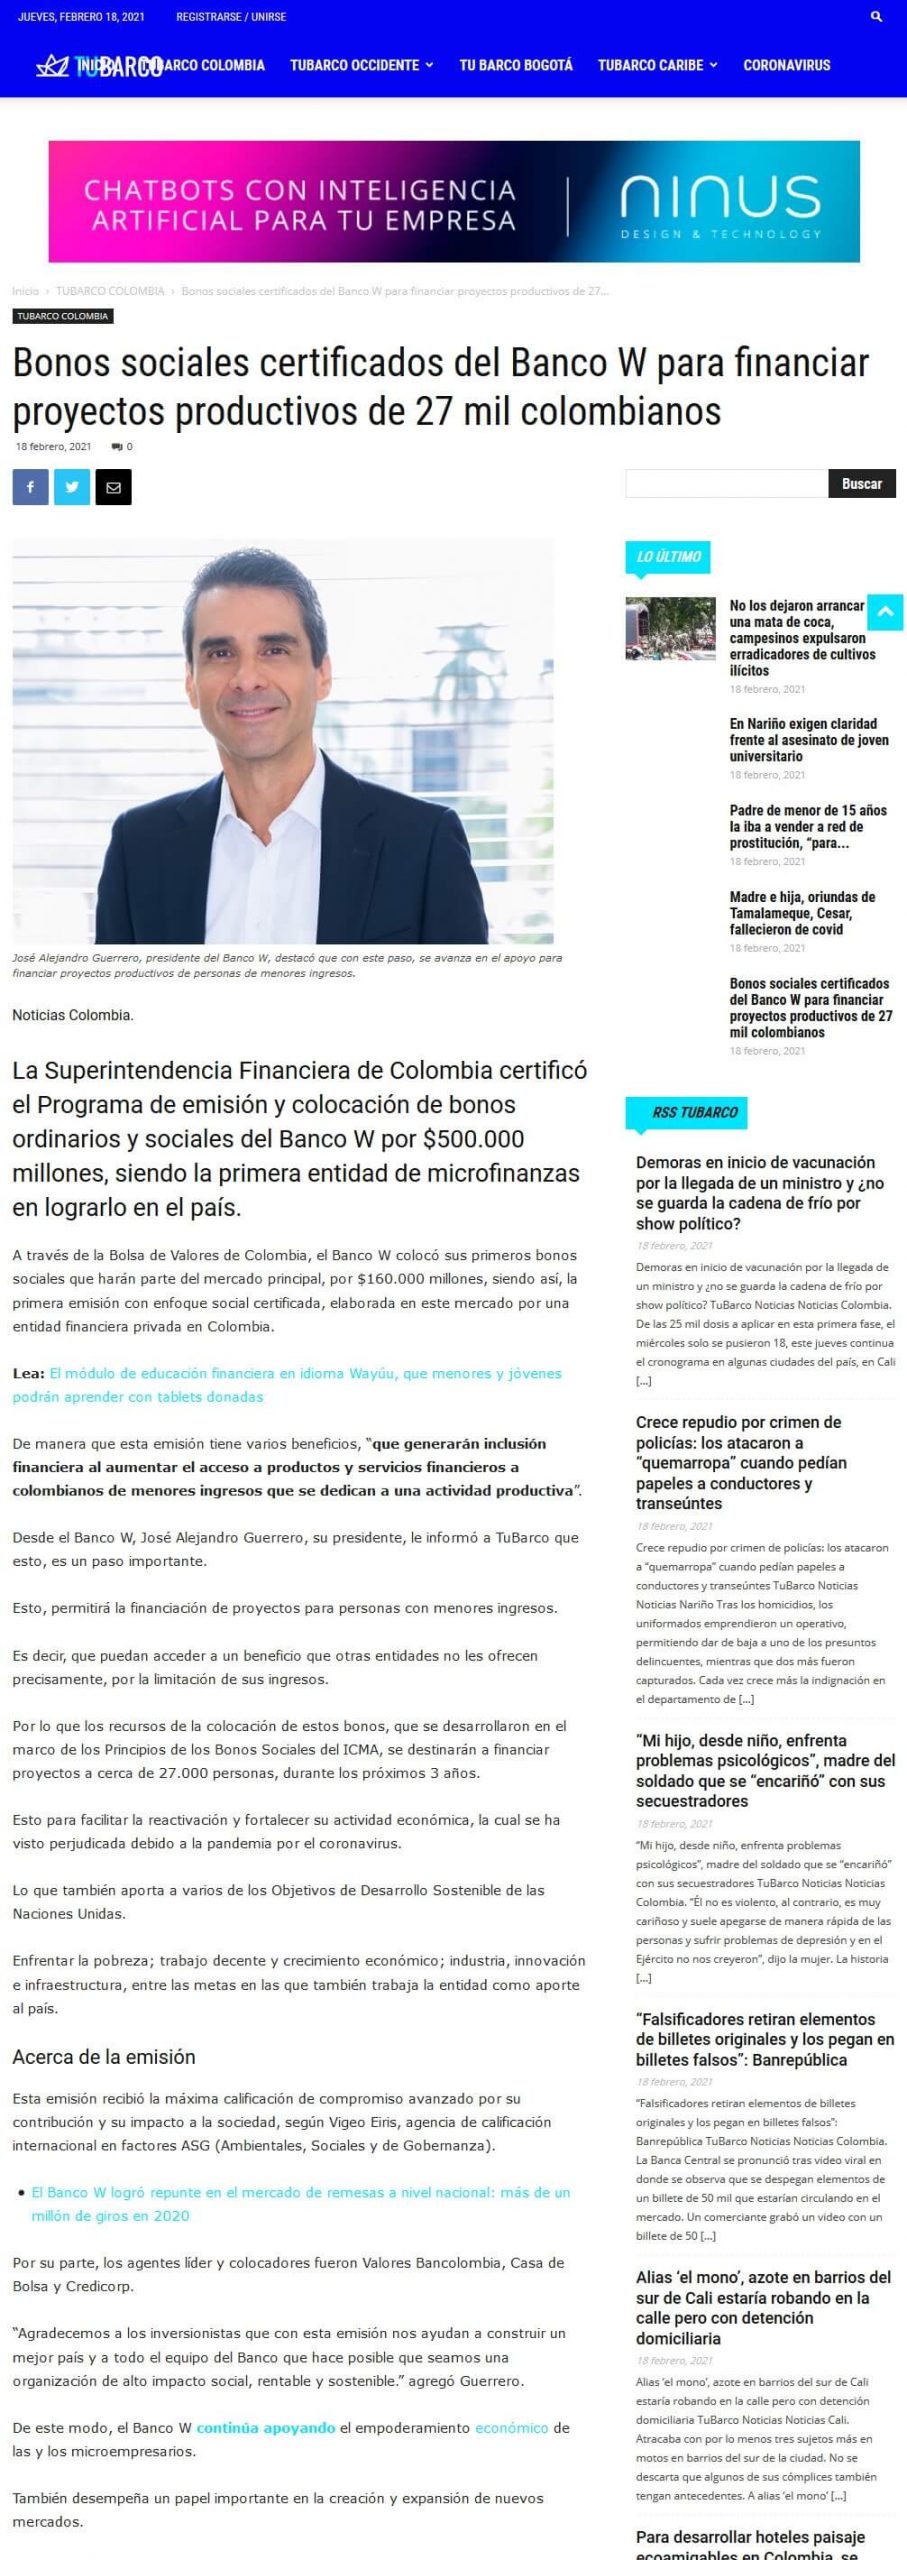 Bonos sociales certificados del Banco W para financiar proyectos productivos de 27 mil colombianos.